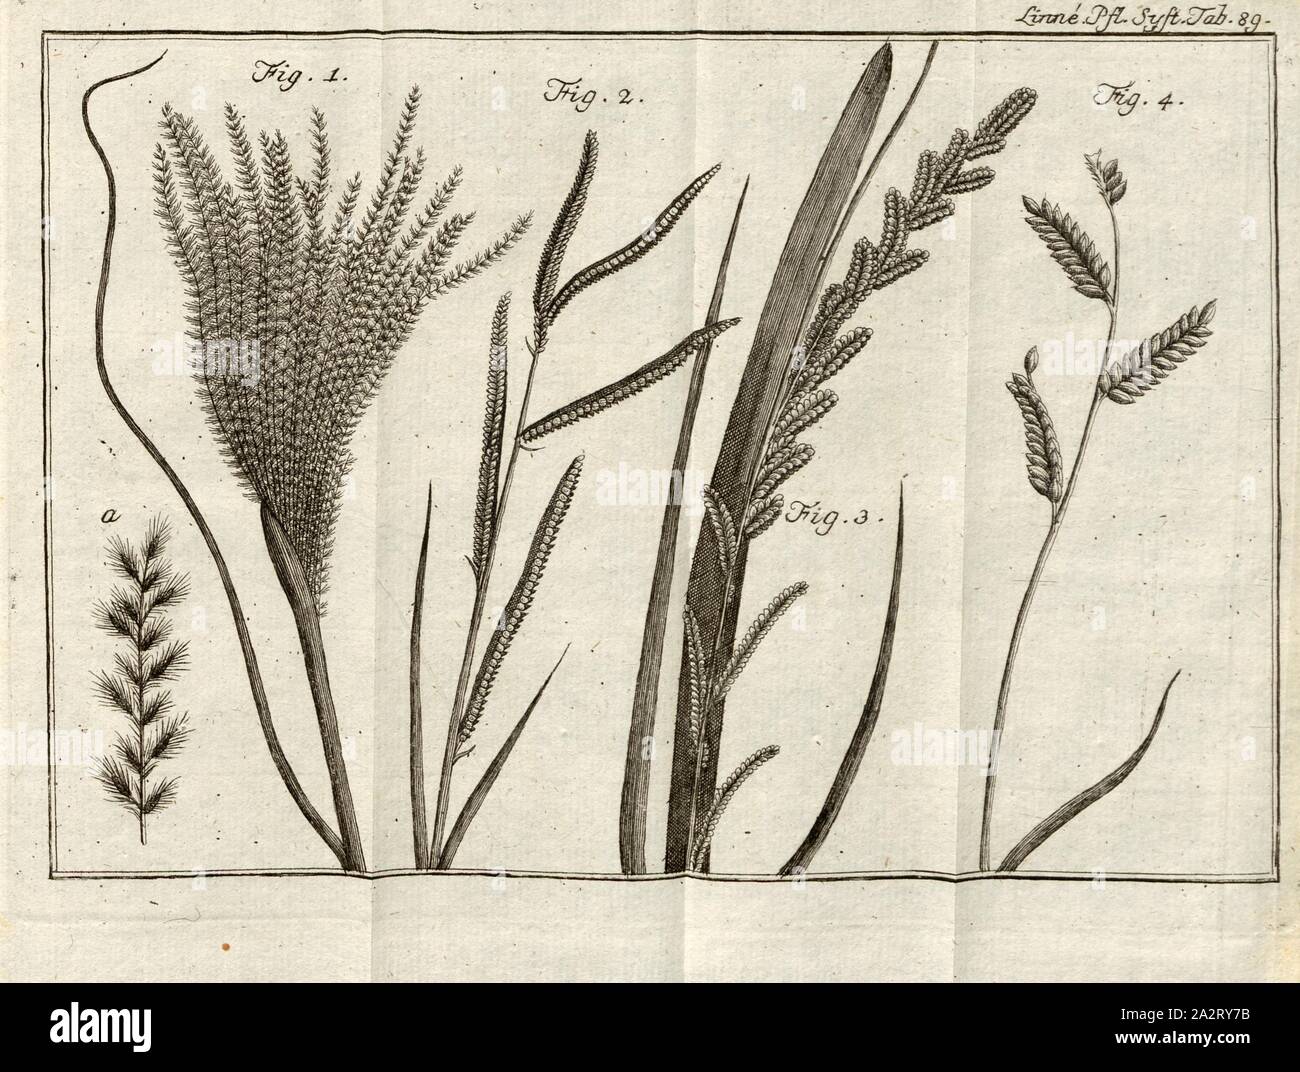 Grasses 3, Fig. 1: A sugarcane collected by Mr. D. Thunberg in Japan, described by Mr. Houttuyn as a separate species of its own, or at least related to Forskähl's Sacharo bifloro, under the name Saccharum iaponicum, Fig. 2: Paspalum dissectum from Java, Fig. 3: Paspalum scrobiculatum from Japan, Fig. 4: Paspalum dstichum, perhaps from Japan, plate 89, p. 855, 1785, Carl von Linné: Des Ritters Carl von Linné [...] vollständiges Pflanzensystem: nach der vierzehnten lateinischen Ausgabe und nach Anleitung des holländischen Houttuynischen Werks übersetzt und mit einer ausführlichen Erklärung Stock Photo